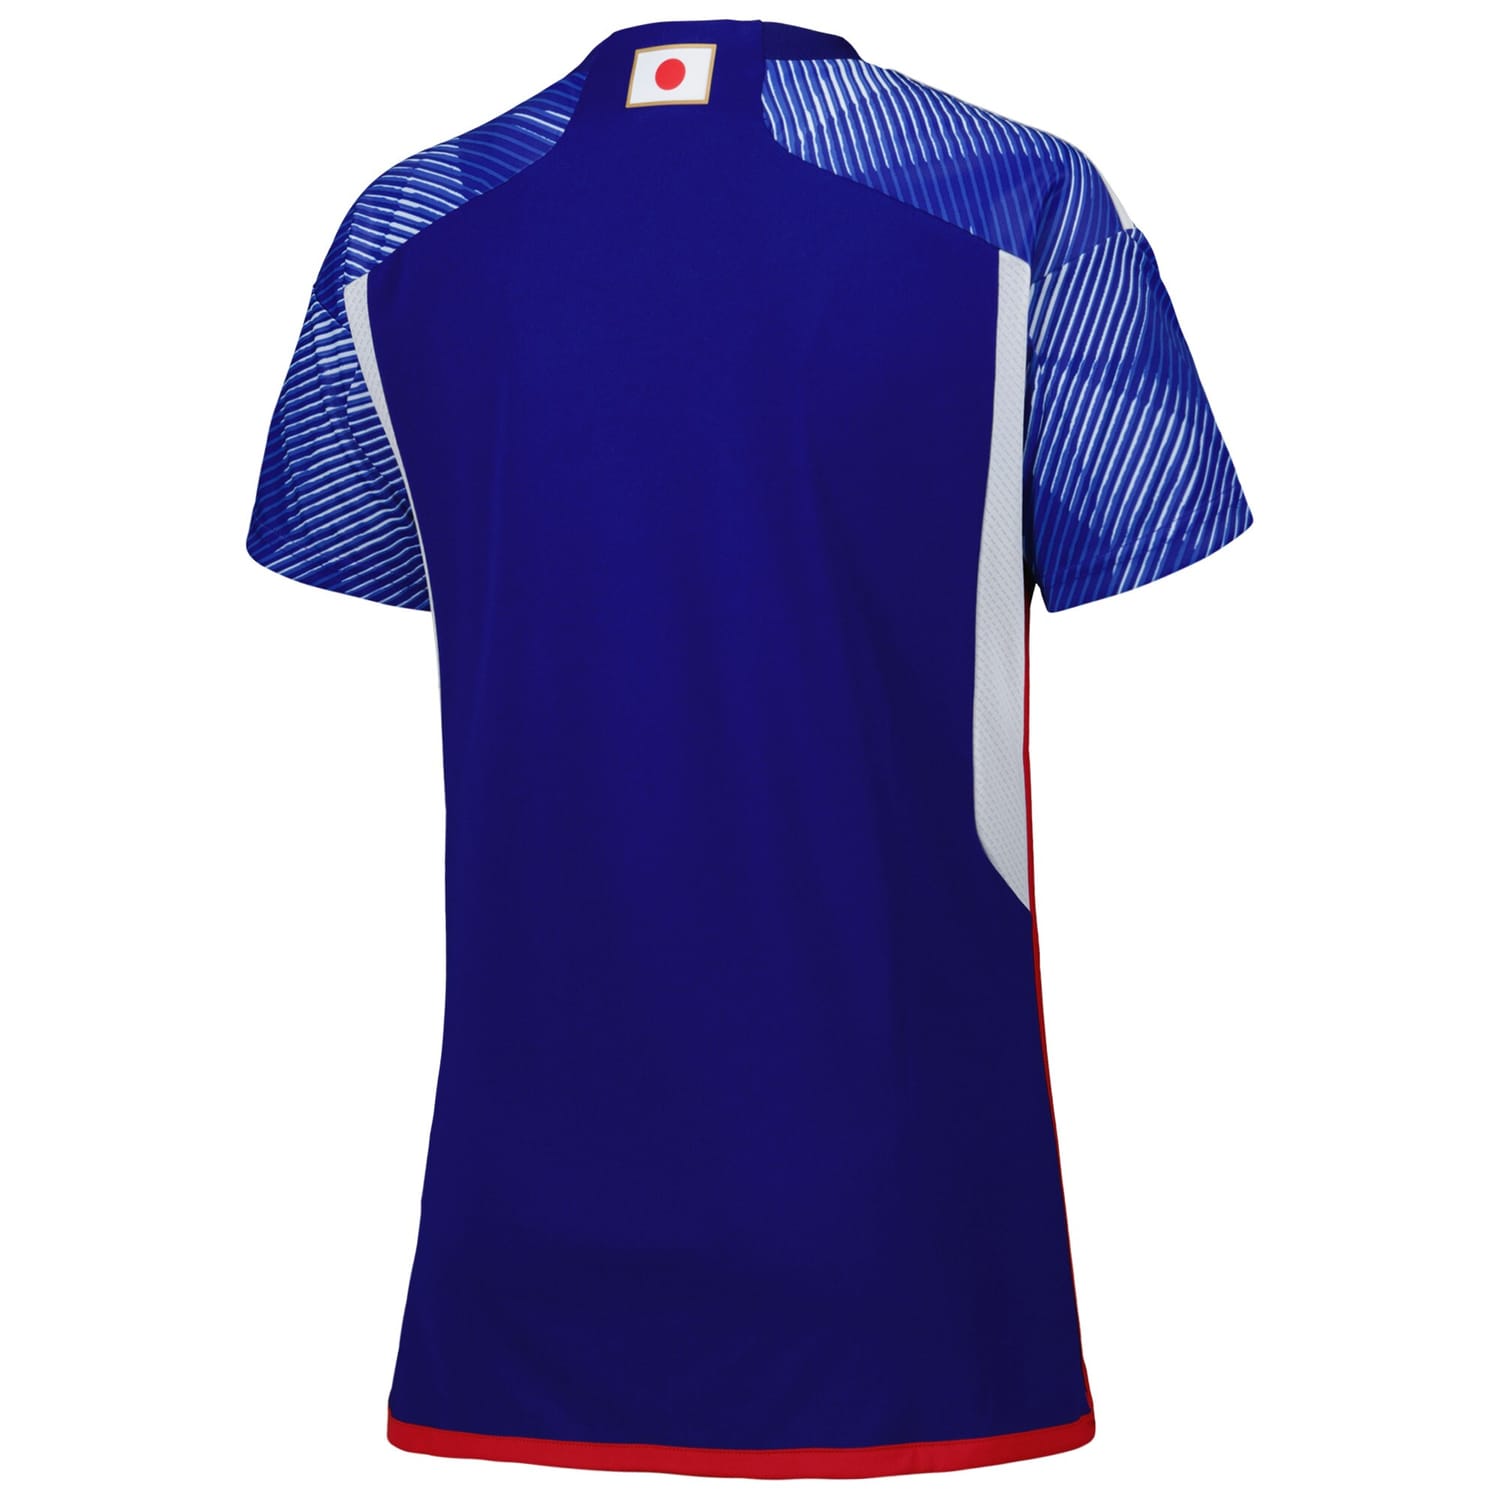 Japan National Team Home Jersey Shirt Blue 2022-23 for Women